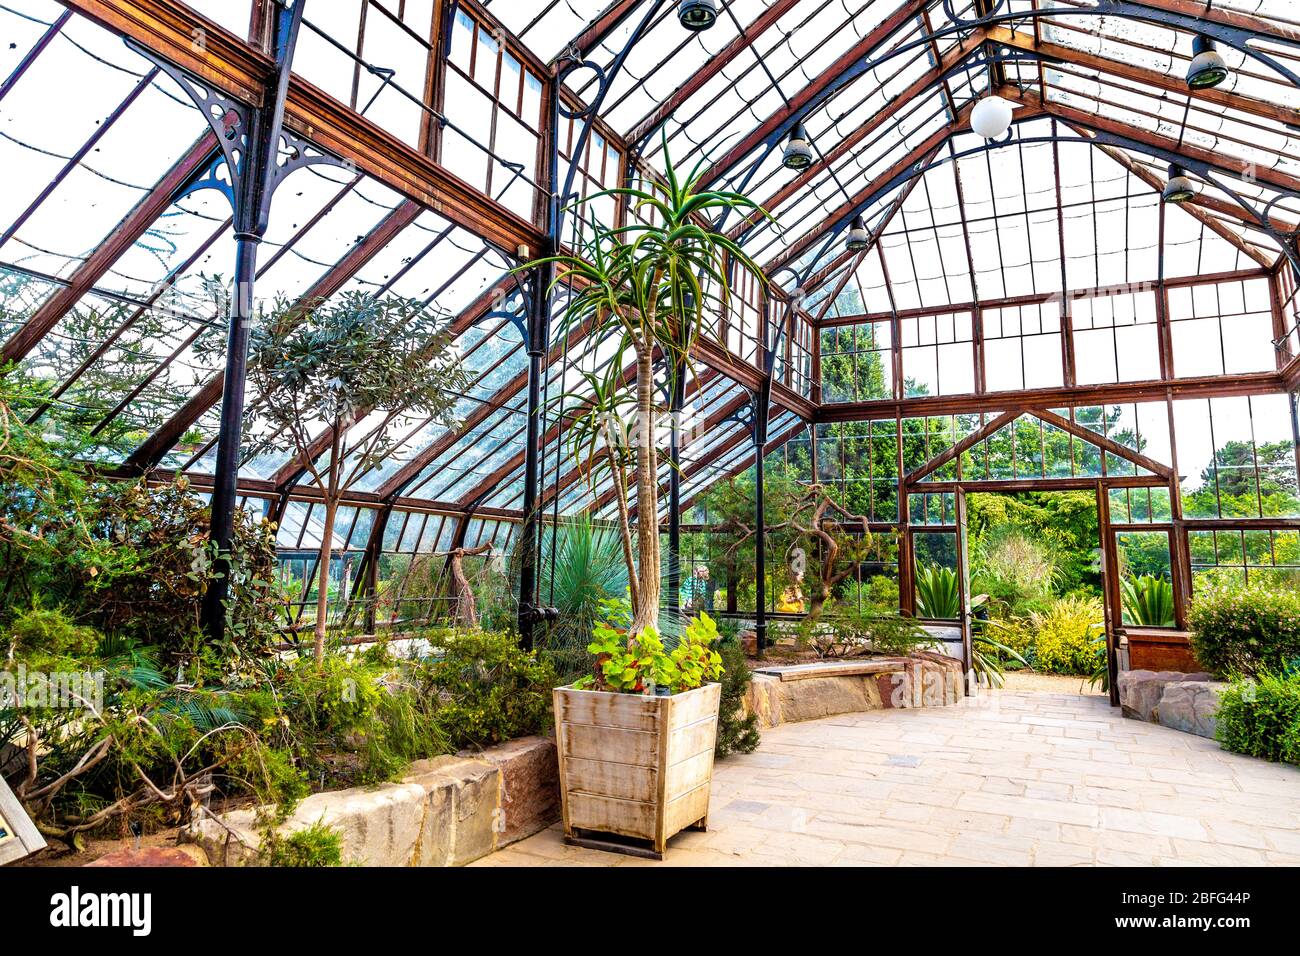 Glasshouse at the Botanic Garden in Cambridge, UK Stock Photo